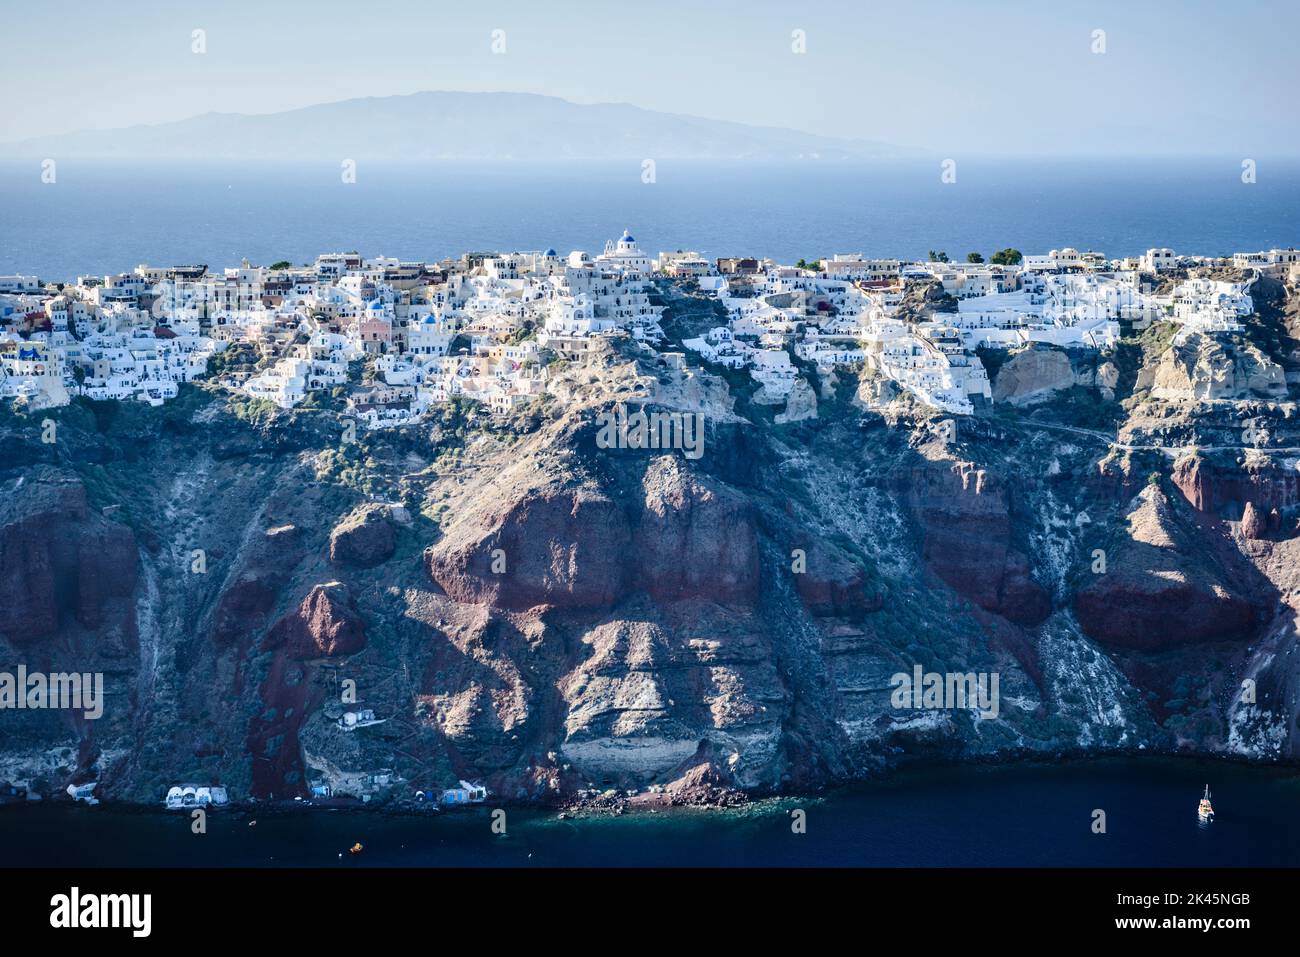 Vue aérienne d'une île dans les mers bleu profond de la mer Égée, formations rocheuses, maisons blanchies à la chaux perchées sur les falaises. Banque D'Images